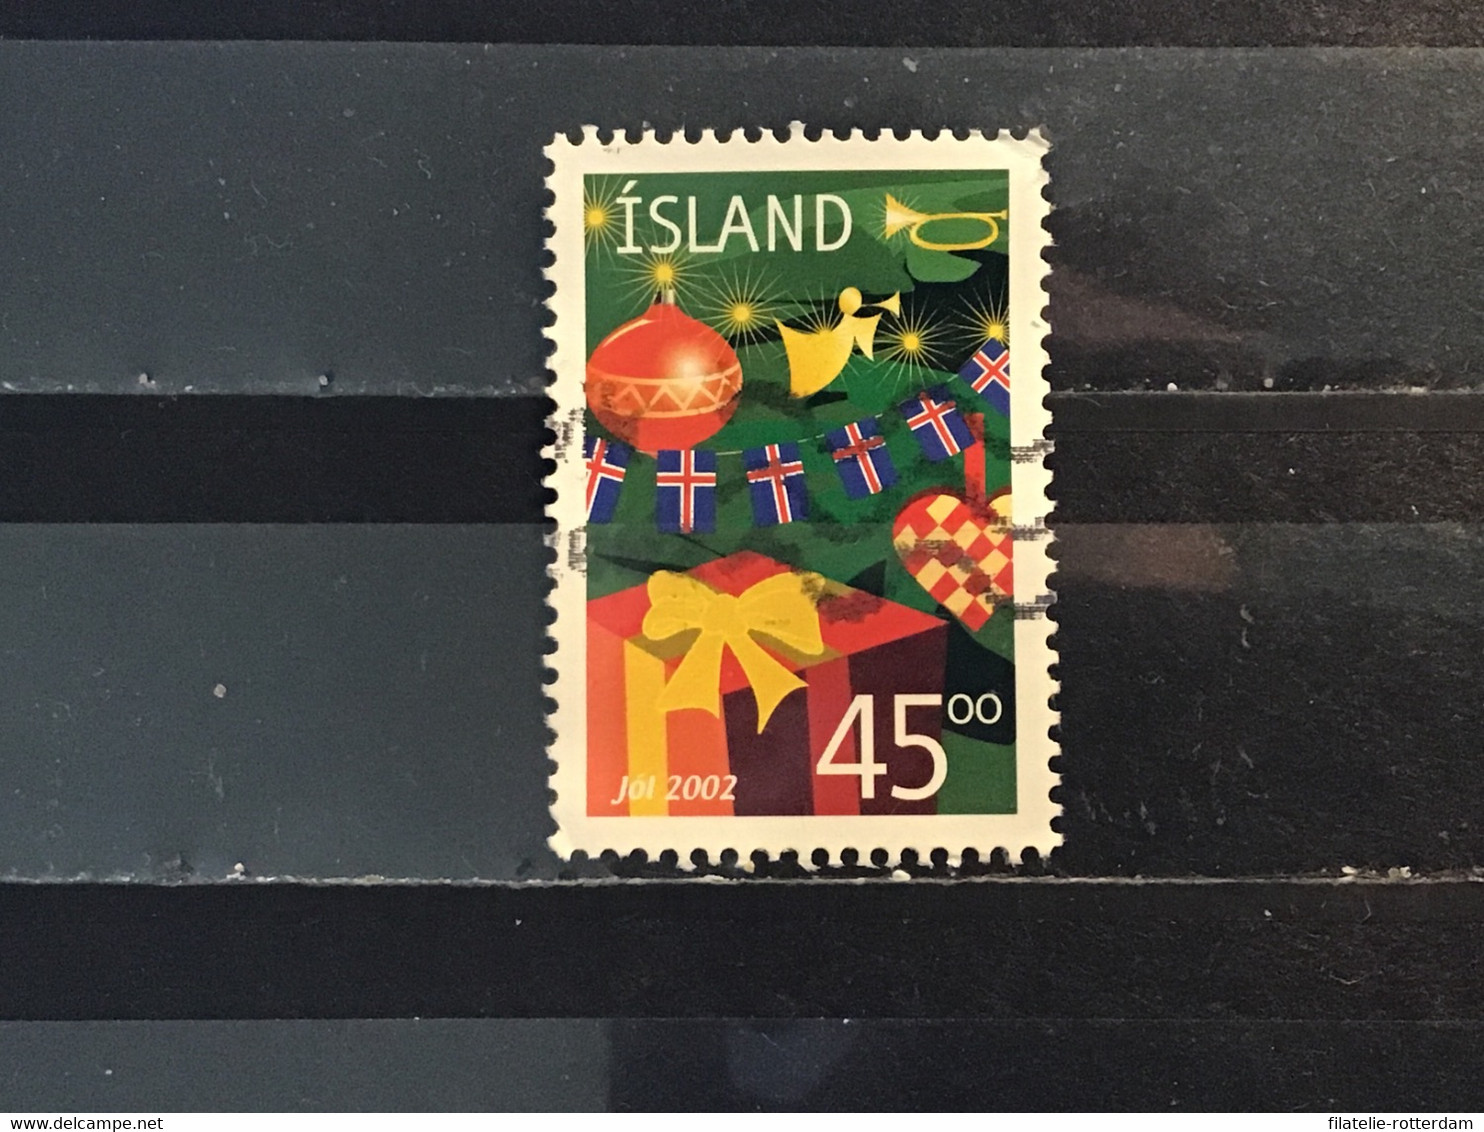 IJsland / Iceland - Kerstmis (45) 2002 - Usados